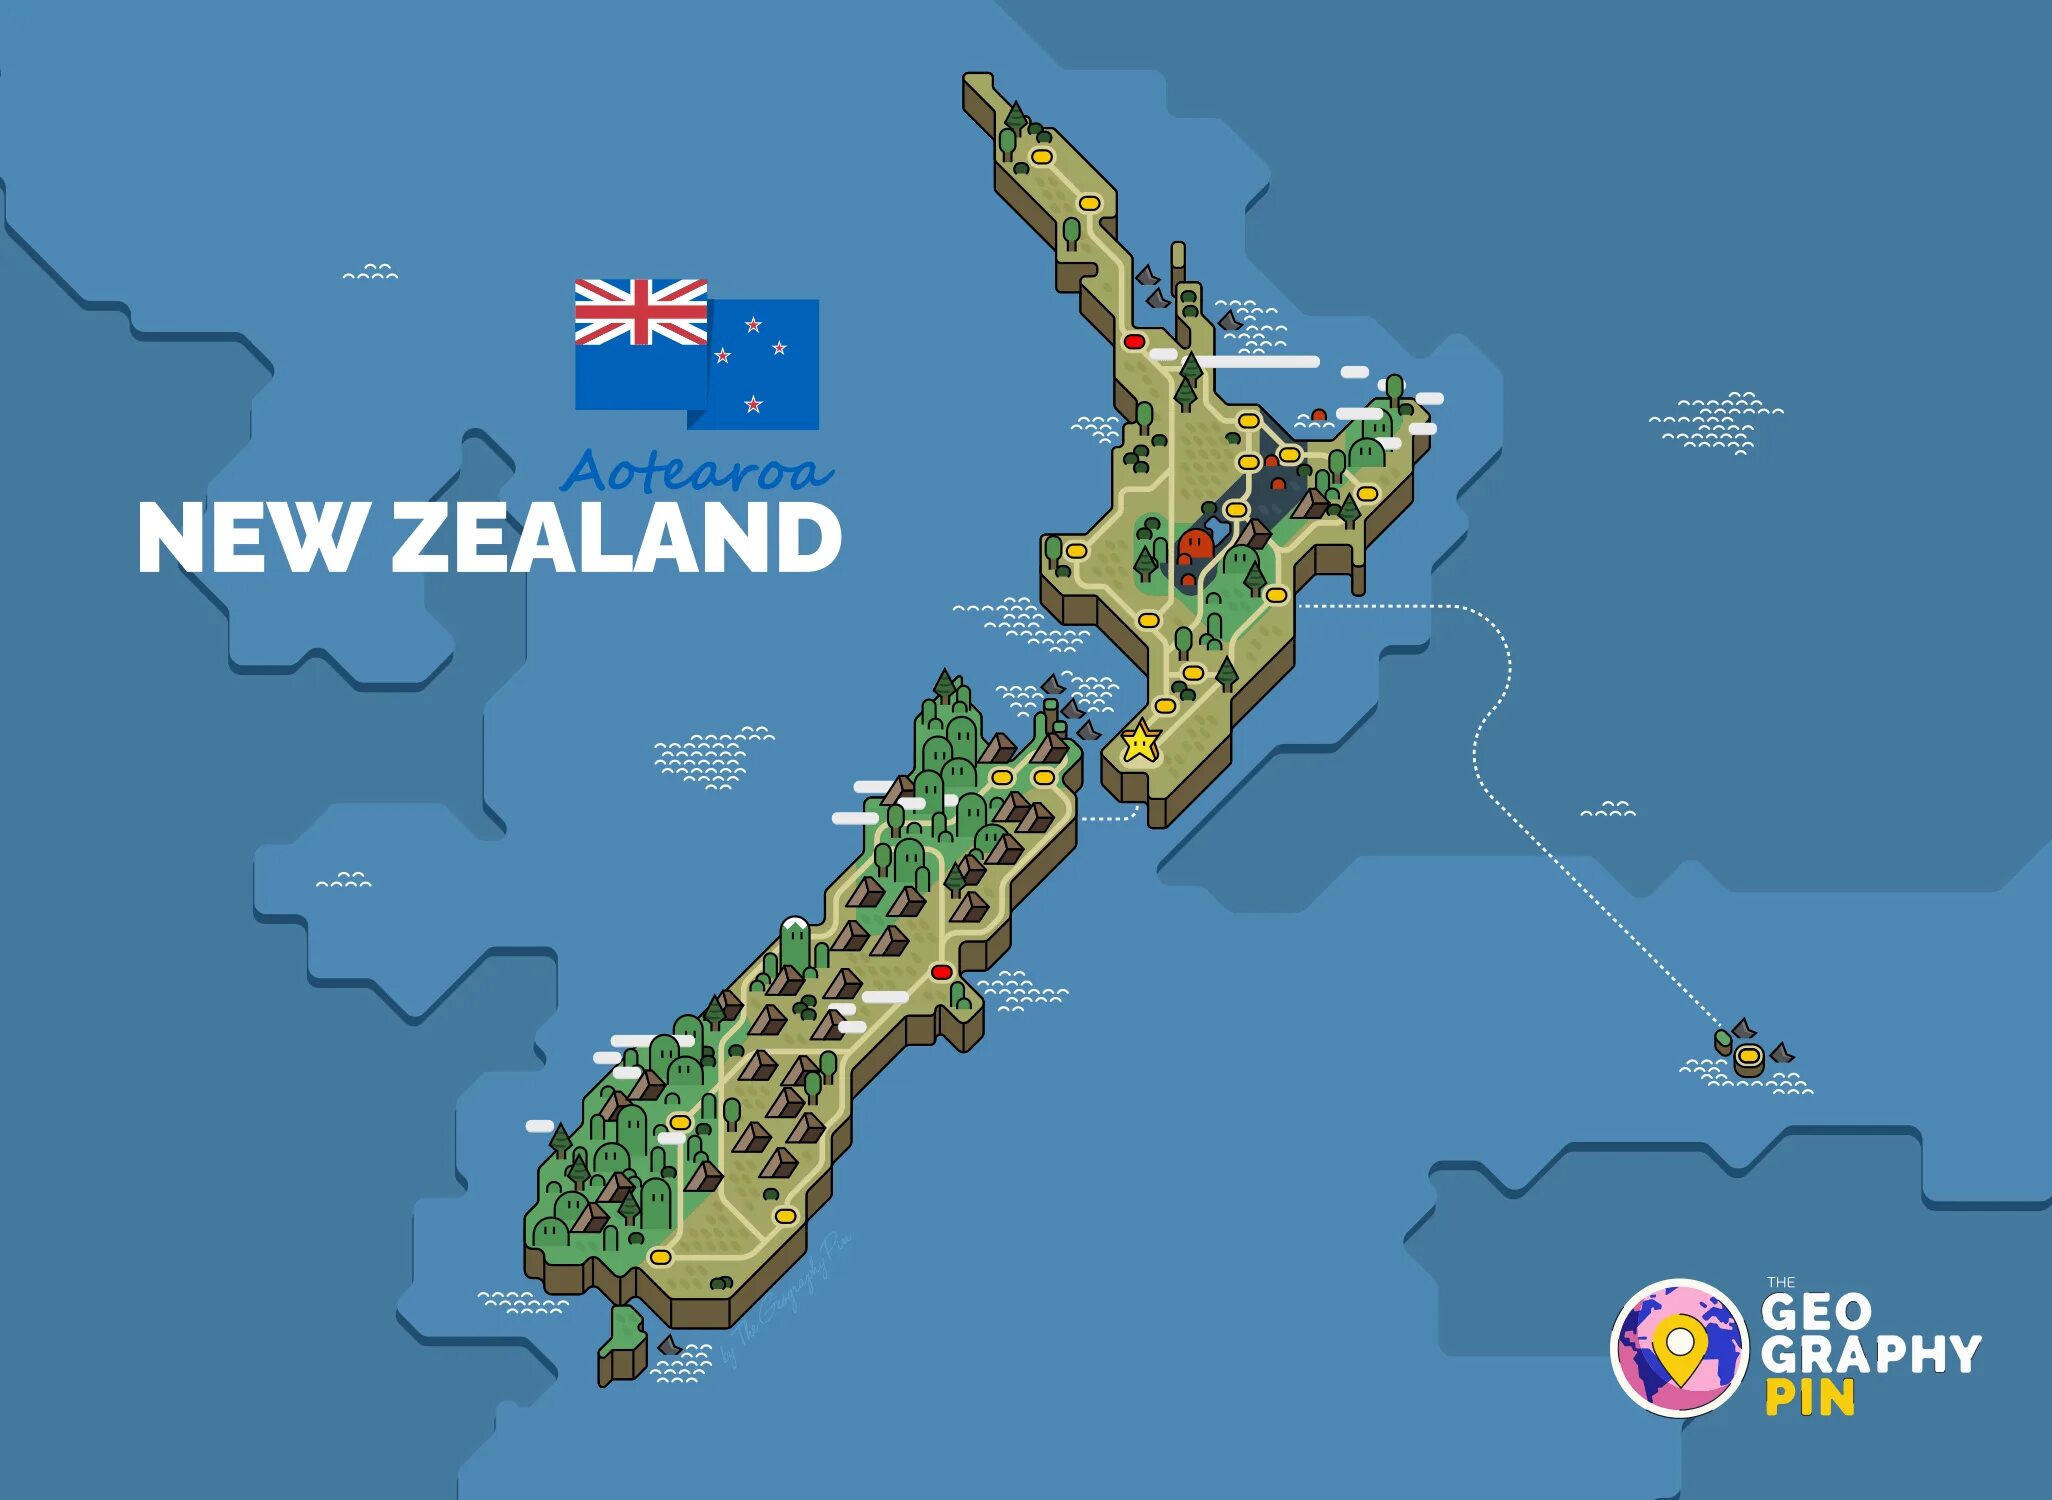 New zealand consists. Новая Зеландия на карте. Карта новая Зеландия на карте. Карта новой Зеландии на английском языке.